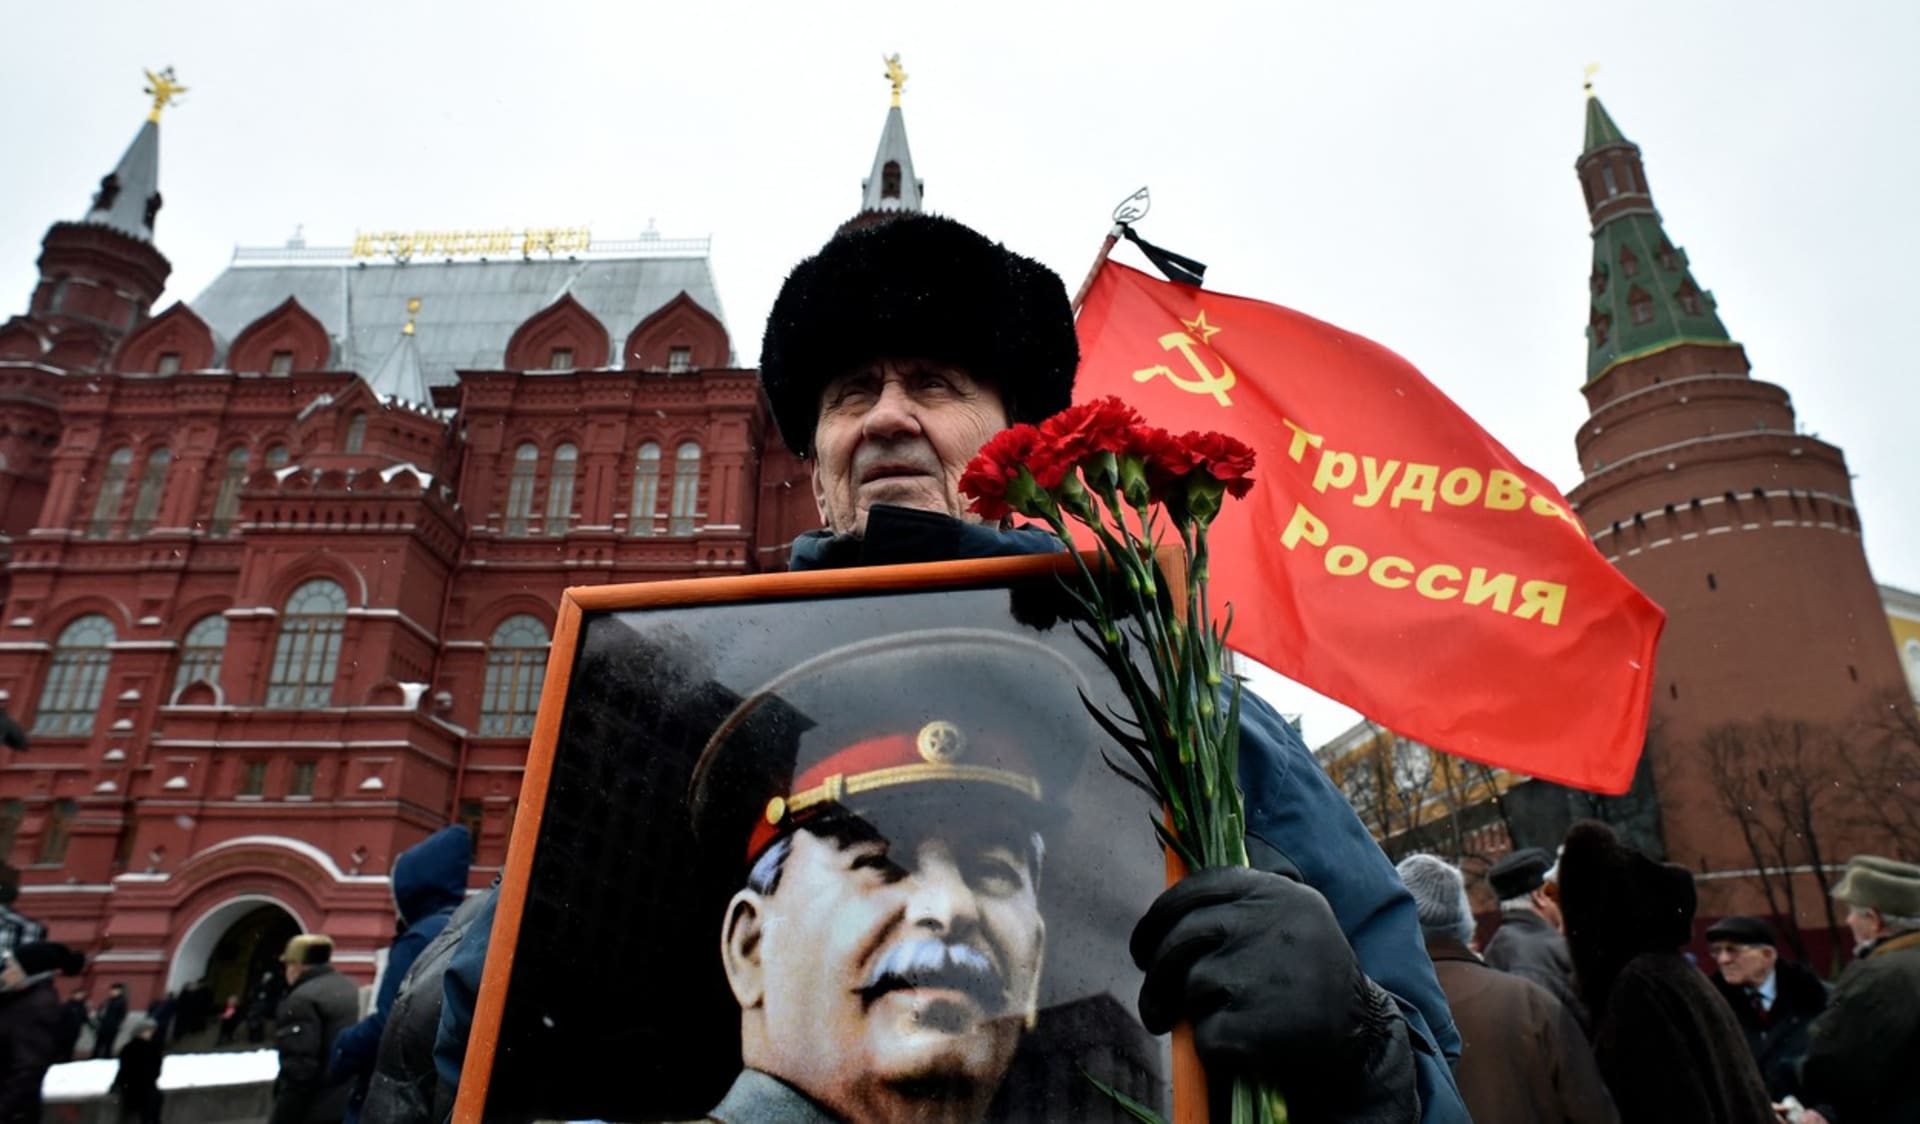 Podporovatel komunistické strany si v Moskvě připomíná výročí smrti Stalina (5. 3. 2016).